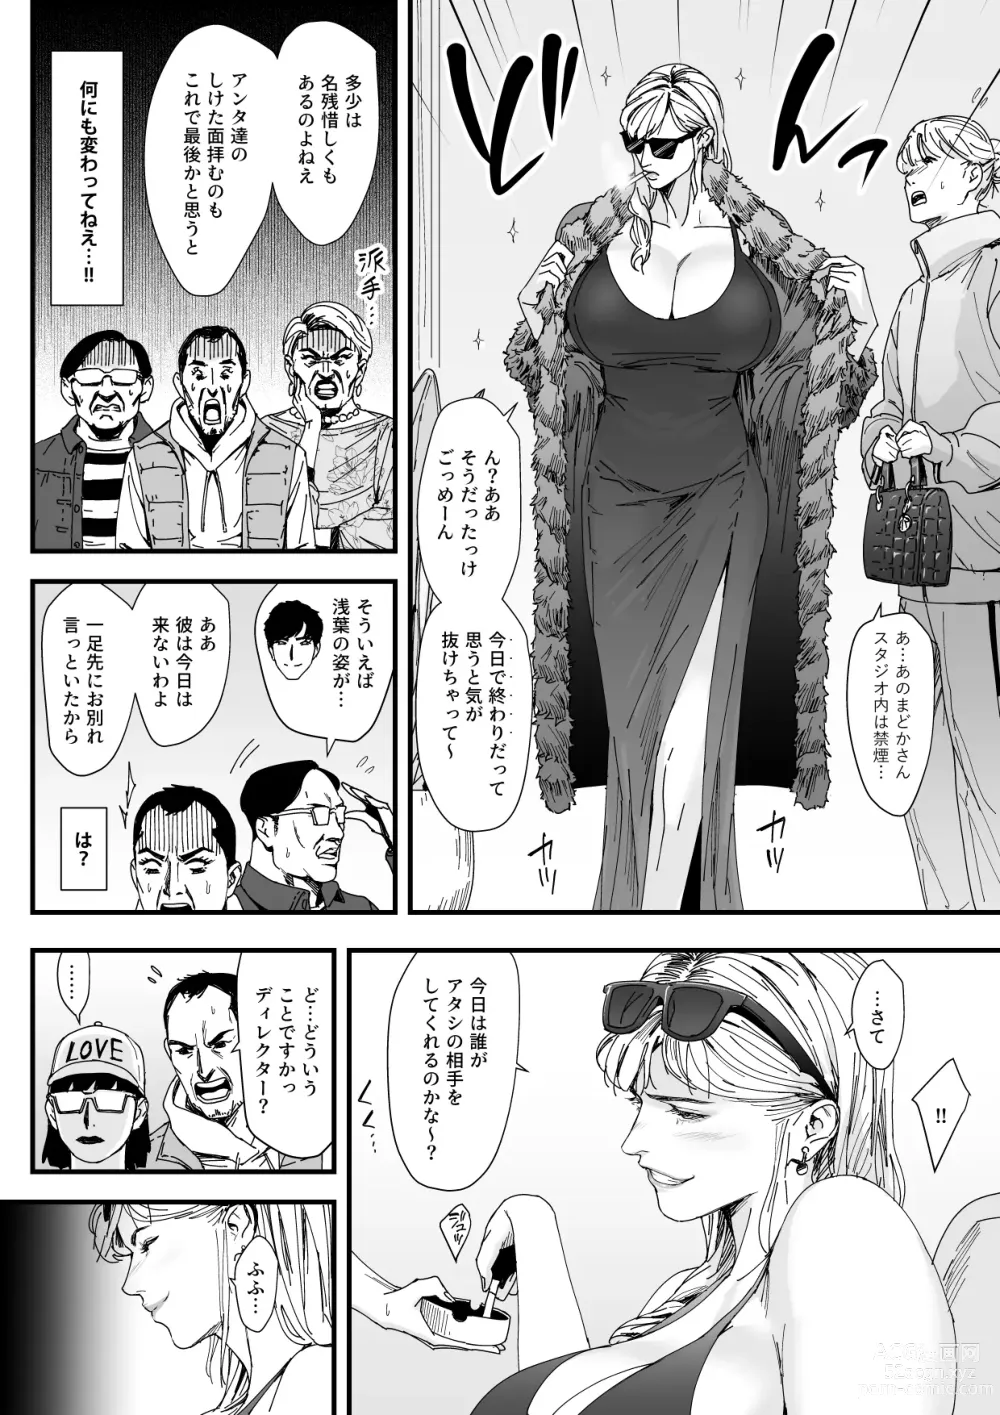 Page 3 of doujinshi カリスマAV女優（23歳）を引退撤回するまでイカせまくる 3 『ファン感謝祭編』